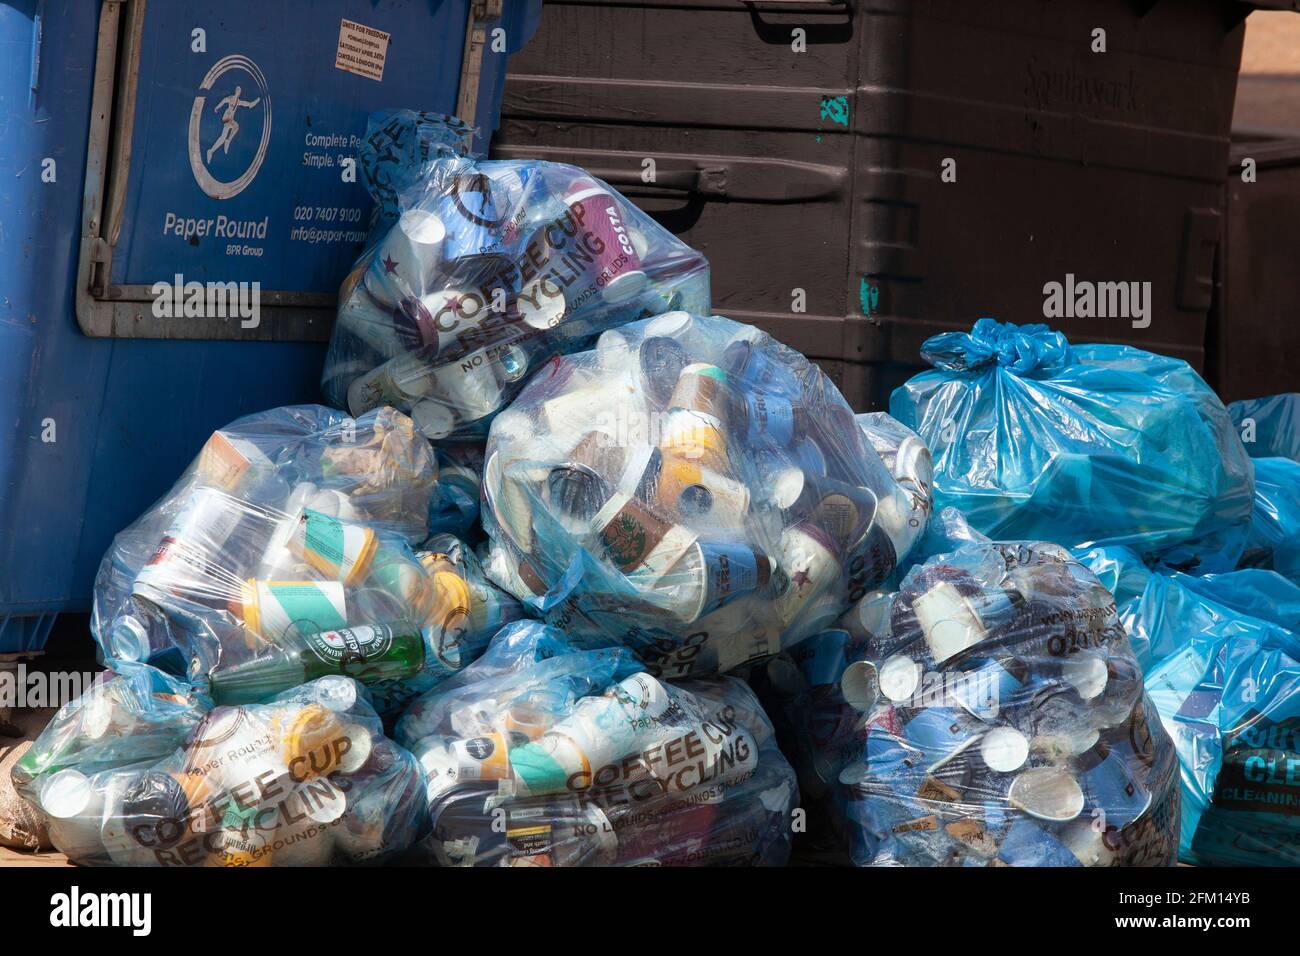 Londra, Regno Unito, 30 aprile 2021: Un cumulo di sacchetti di plastica blu contenenti tazze da caffè monouso attende di essere raccolto per il riciclaggio su Tooley Street, accanto Foto Stock